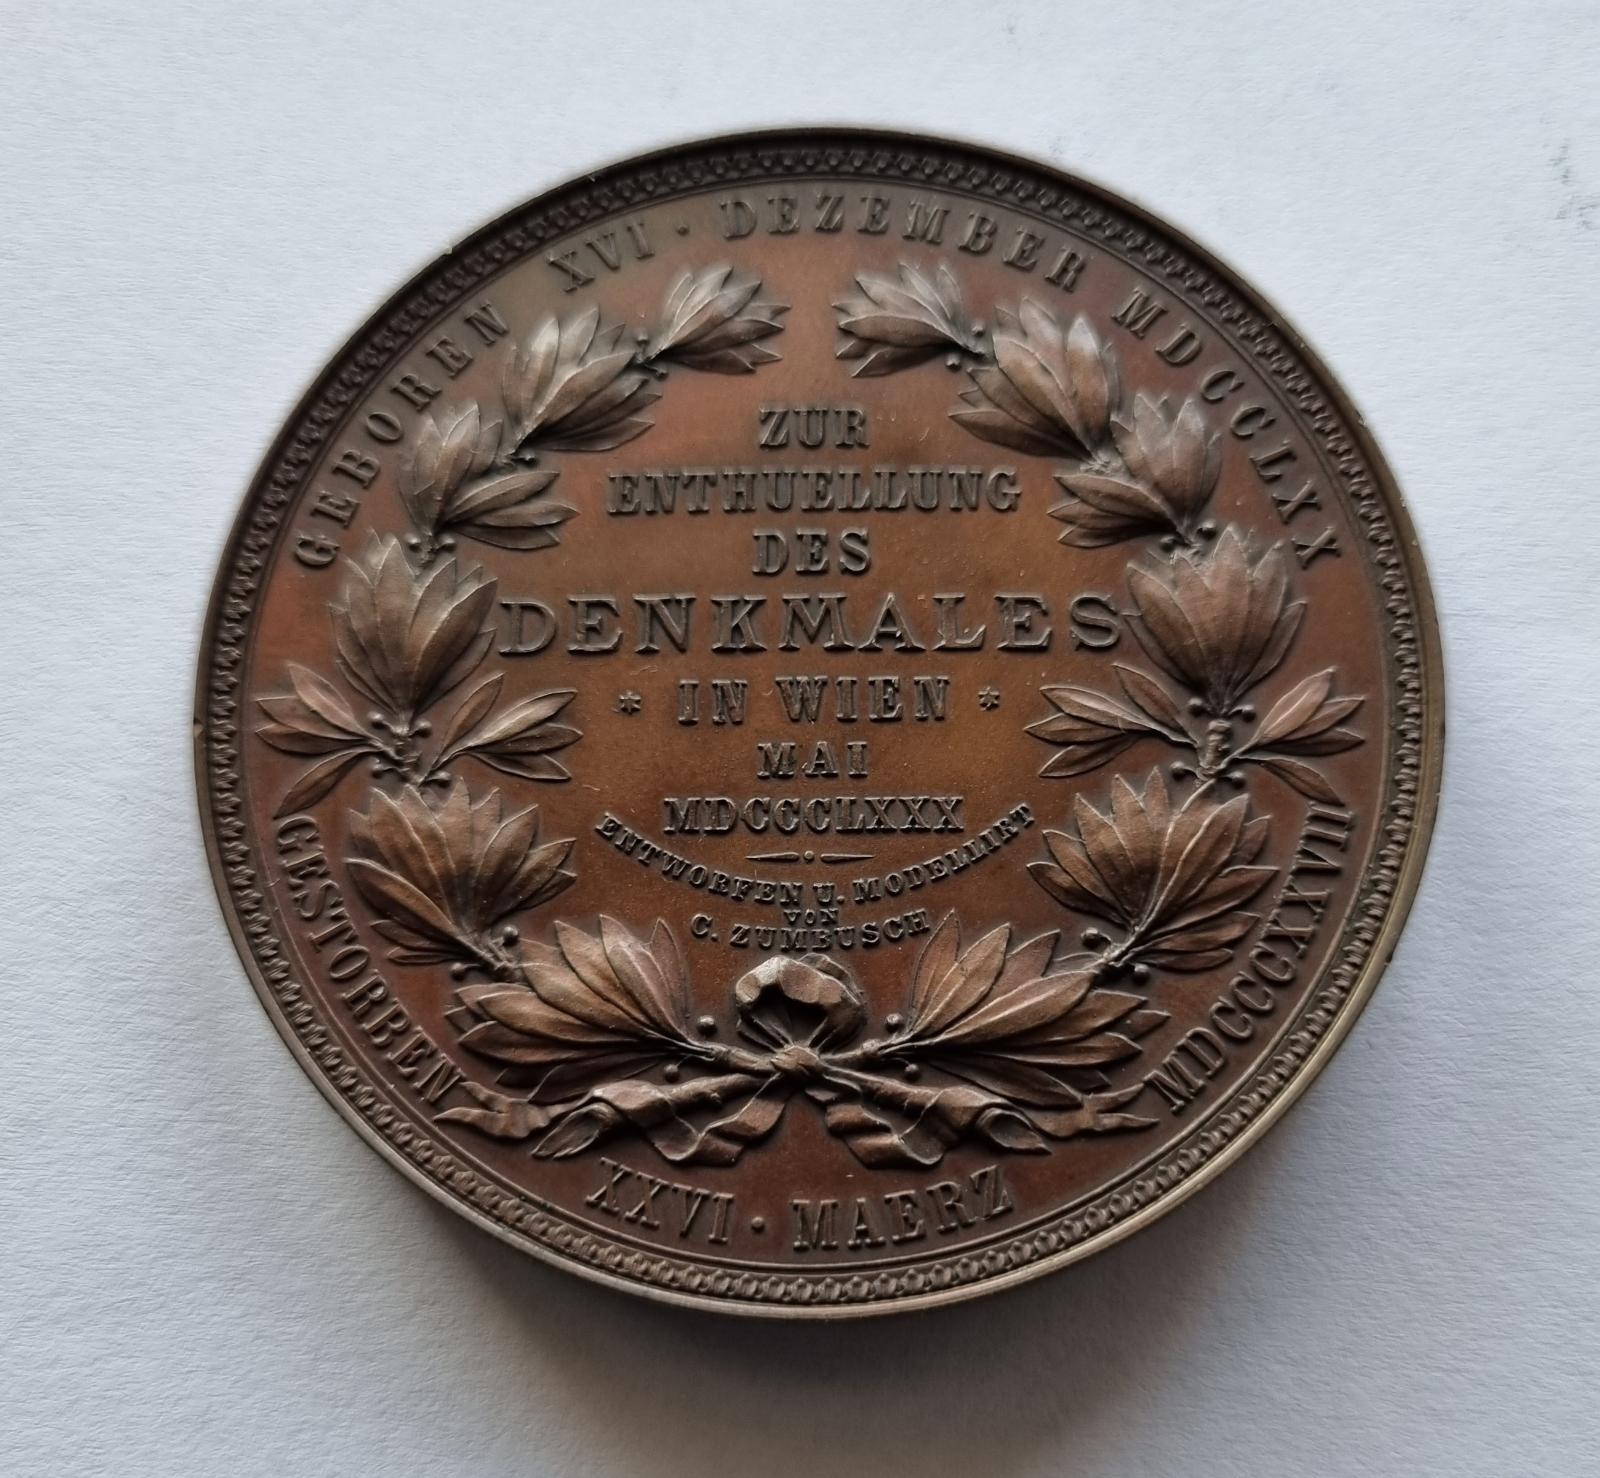 AE Medaila 1880, Ludvig van Beethoven. - Numizmatika